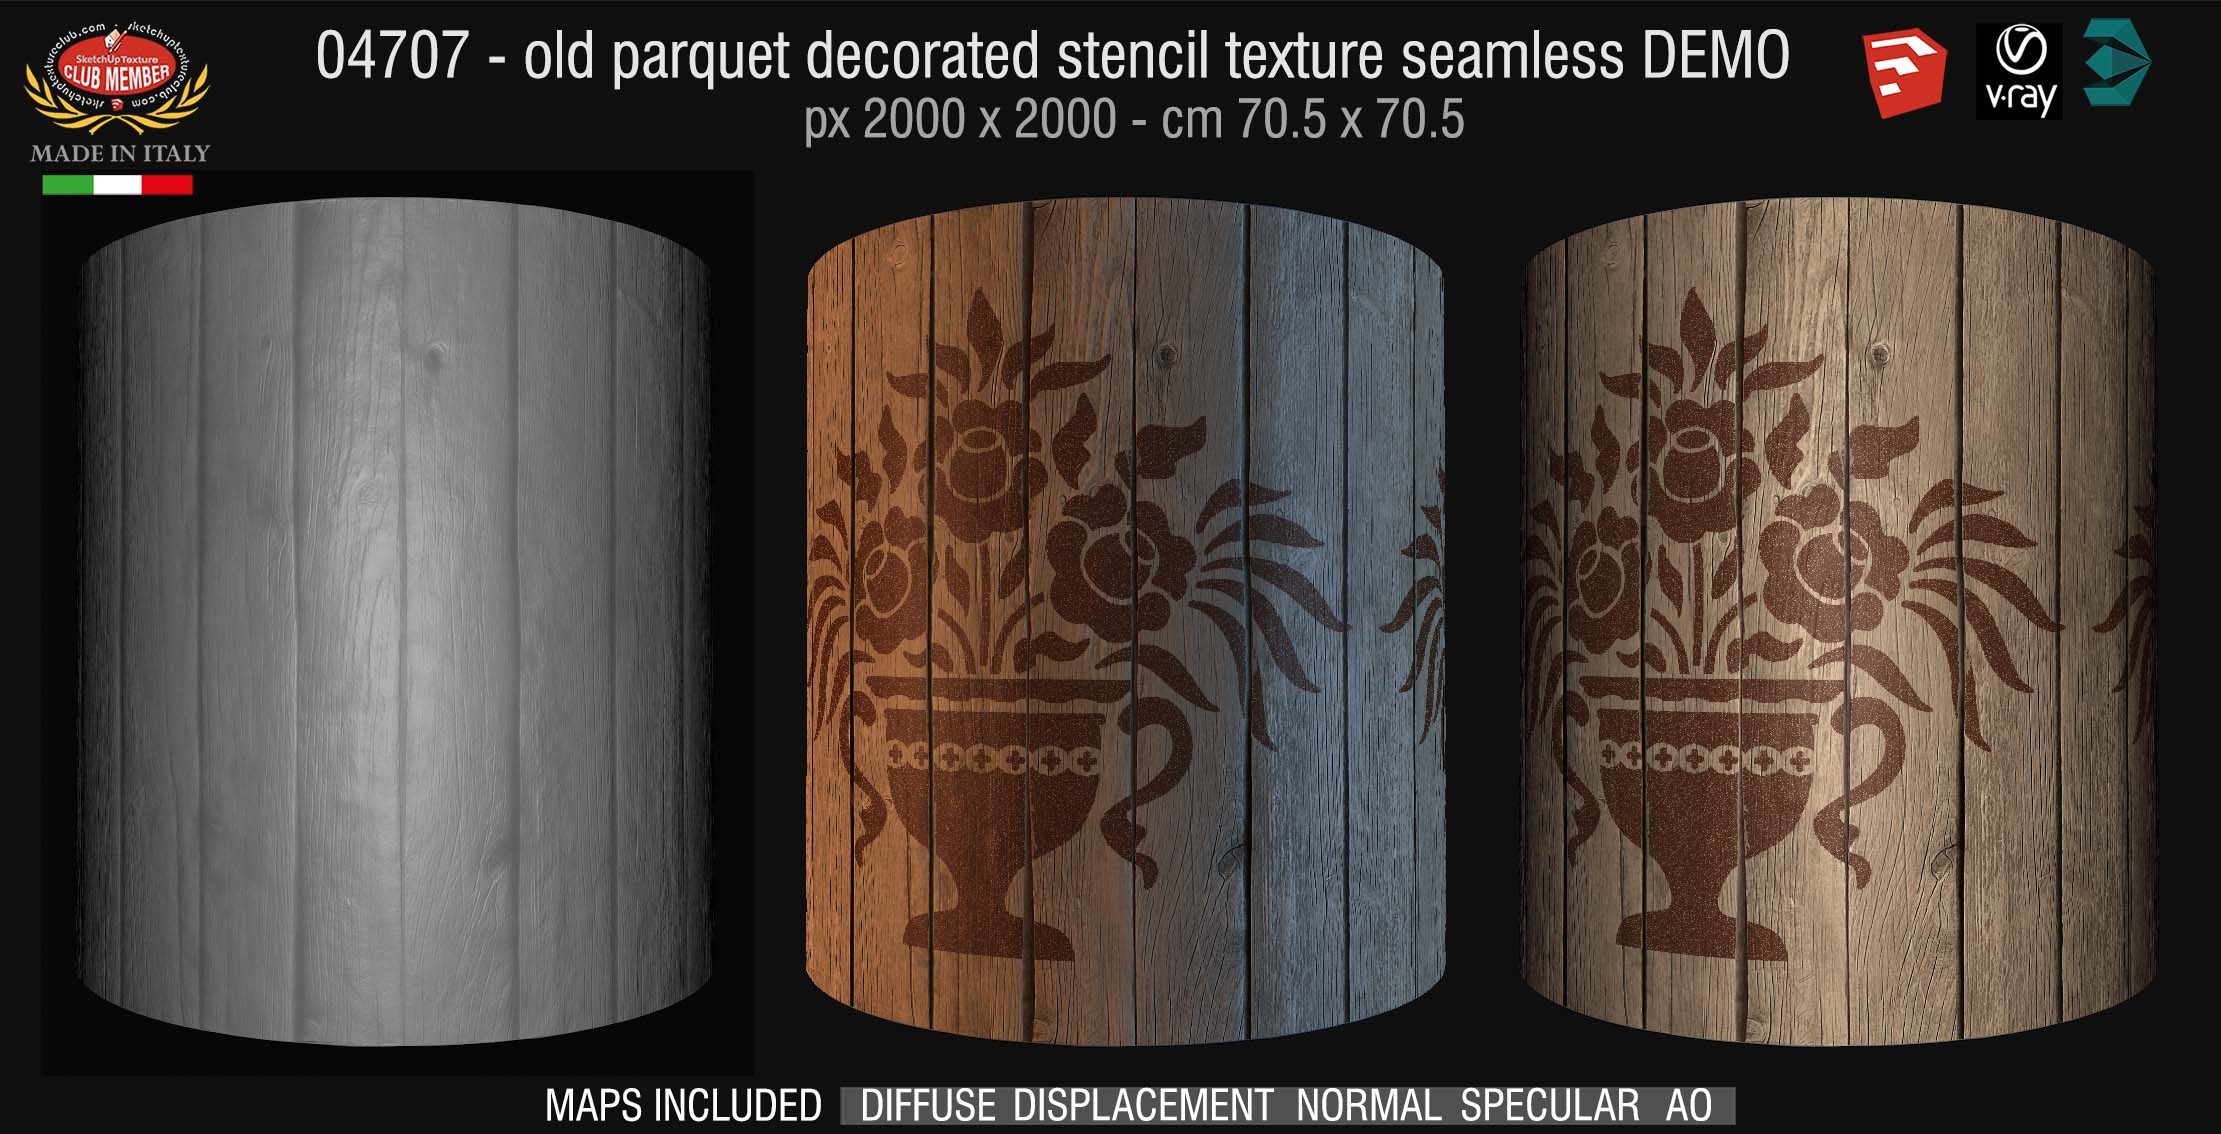 04747 HR Parquet decorated stencil texture seamless + maps DEMO